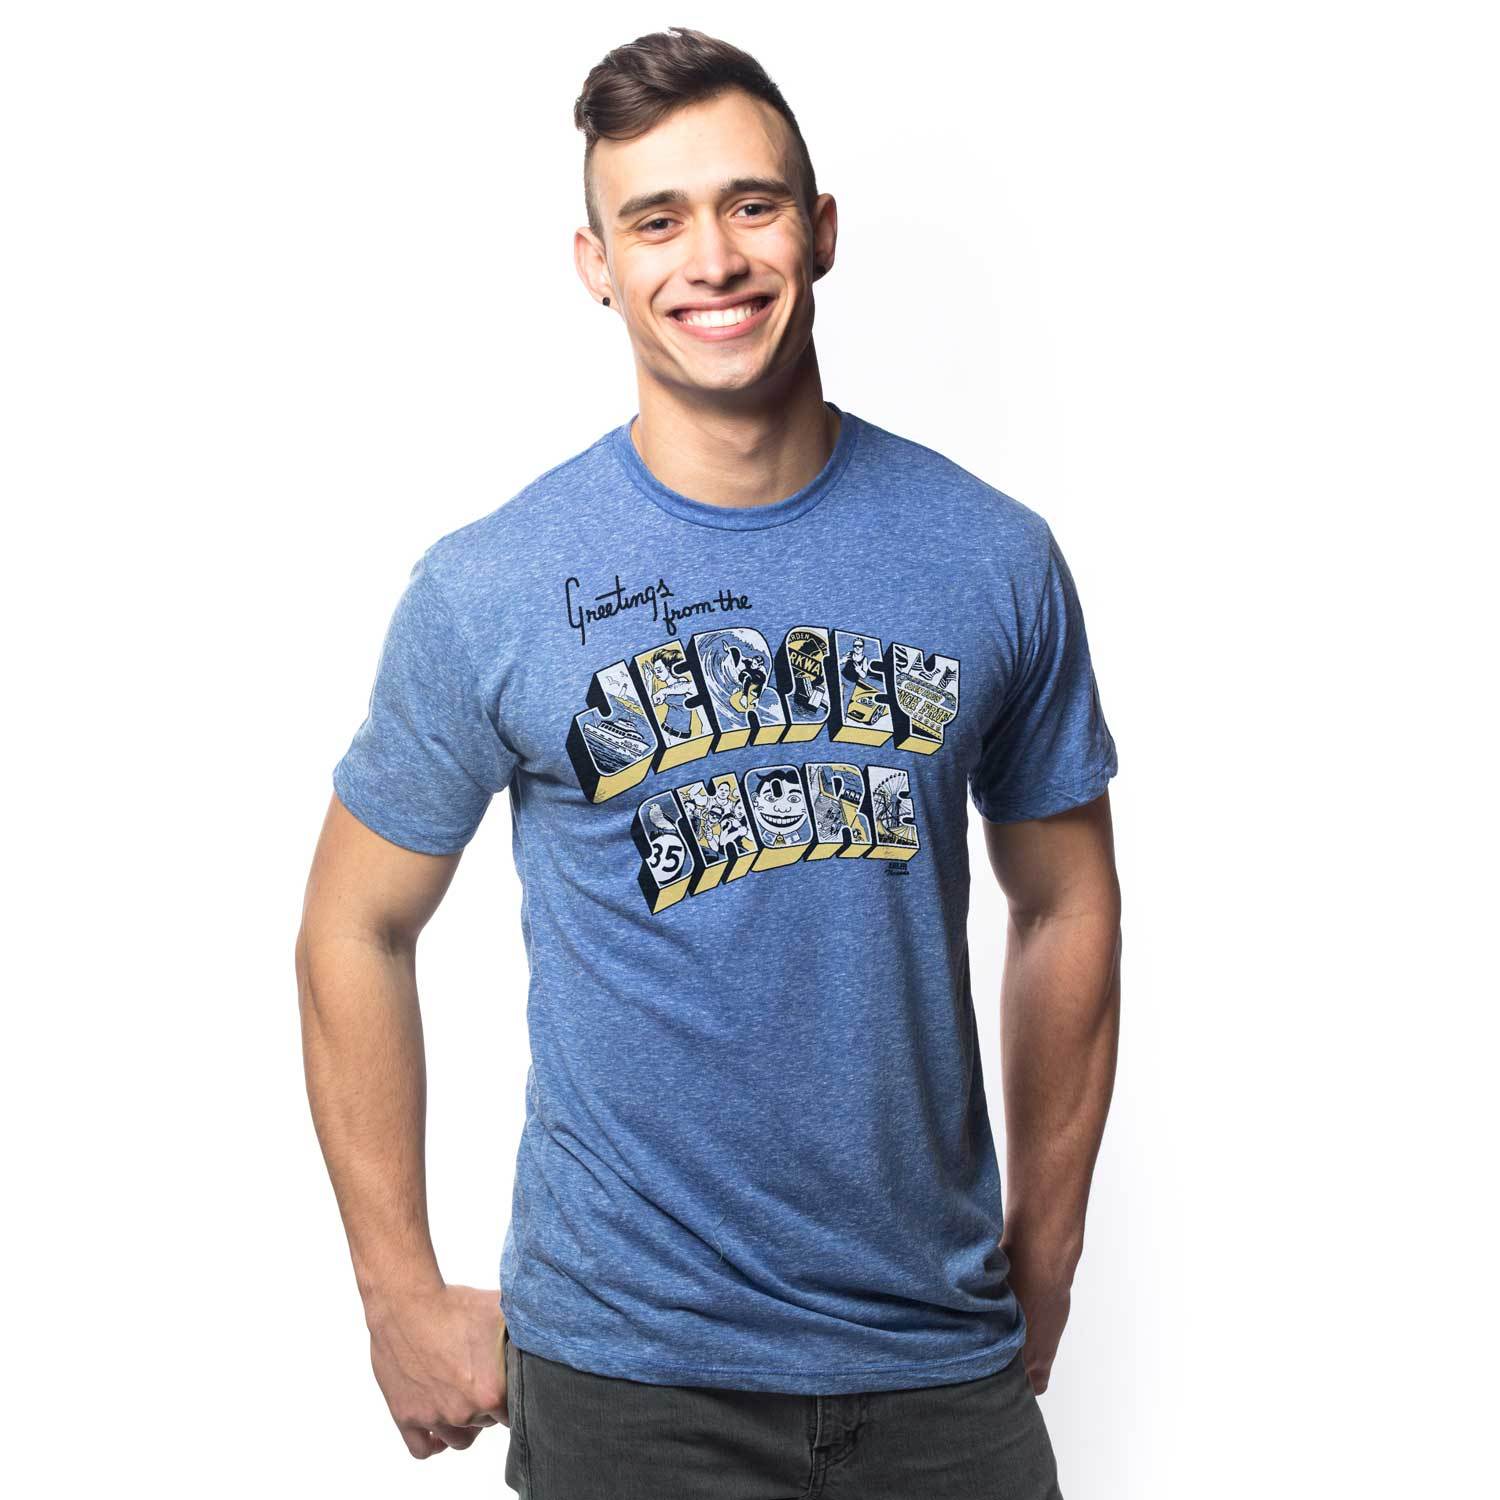 Vintage Jersey T-shirts for Men Online